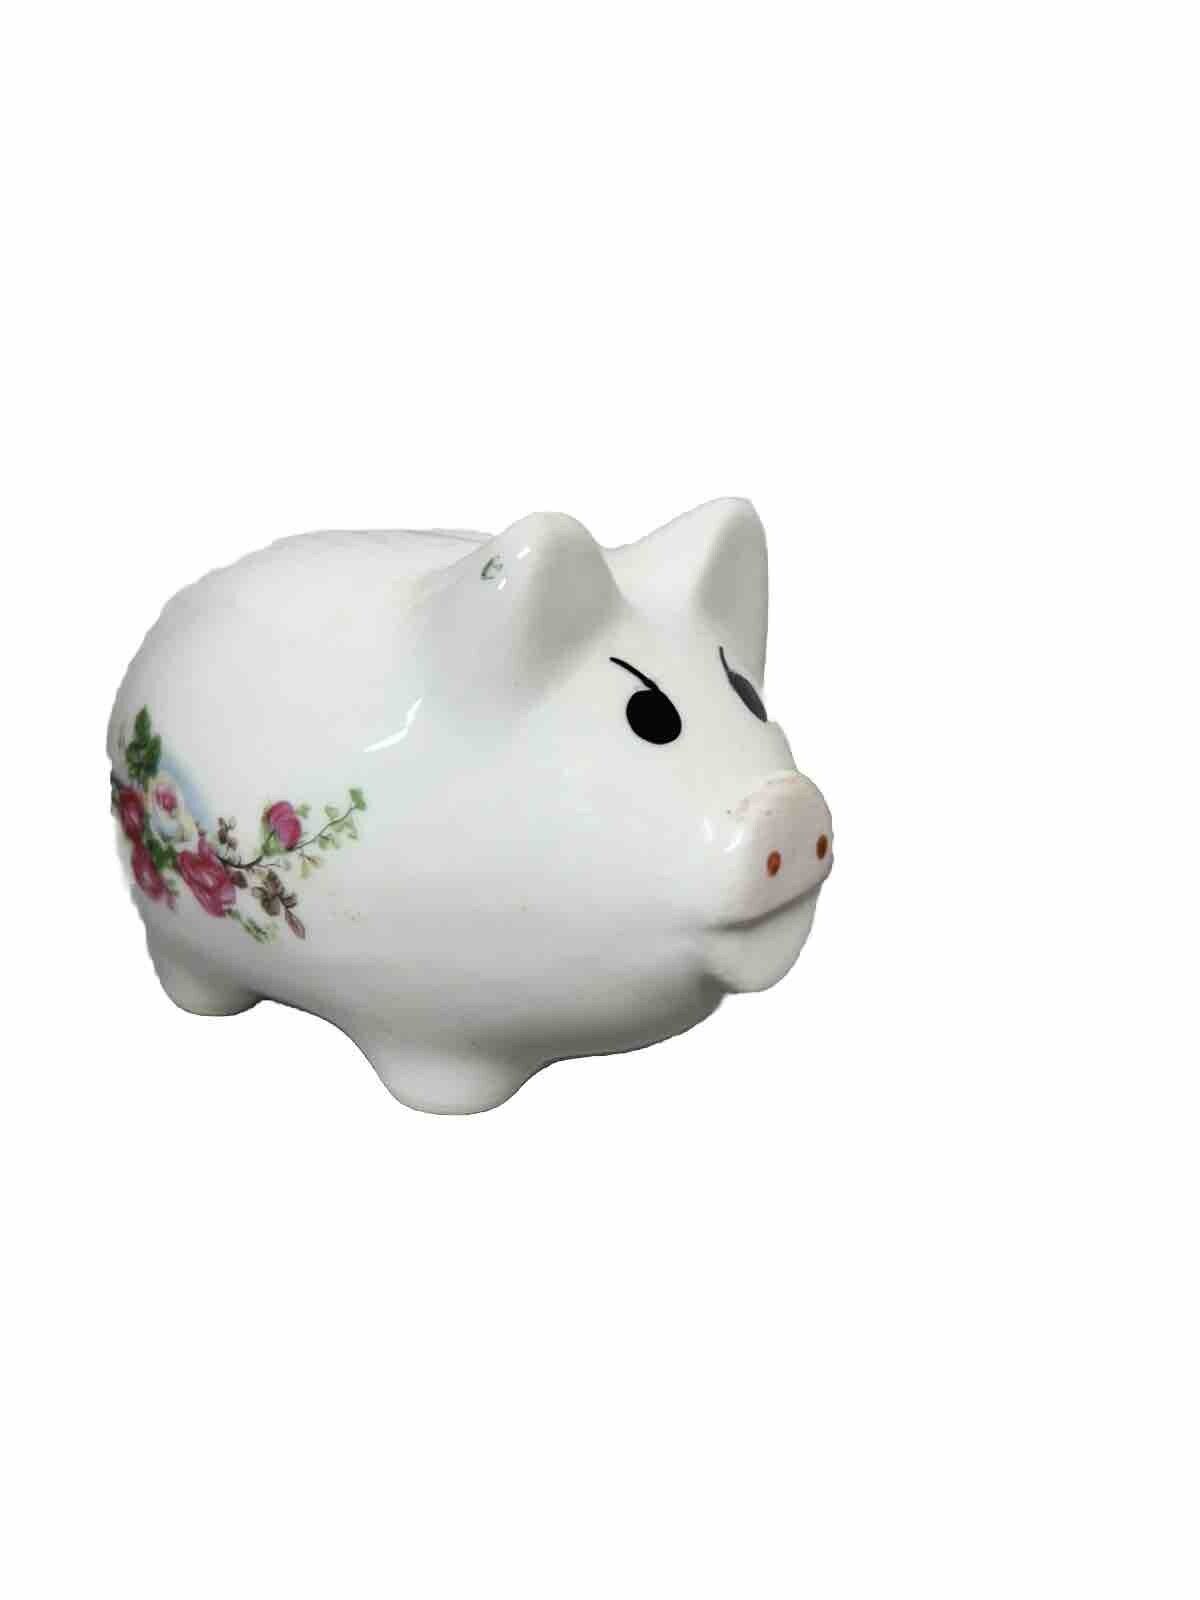 White Floral Ceramic Pig, Piggy Bank